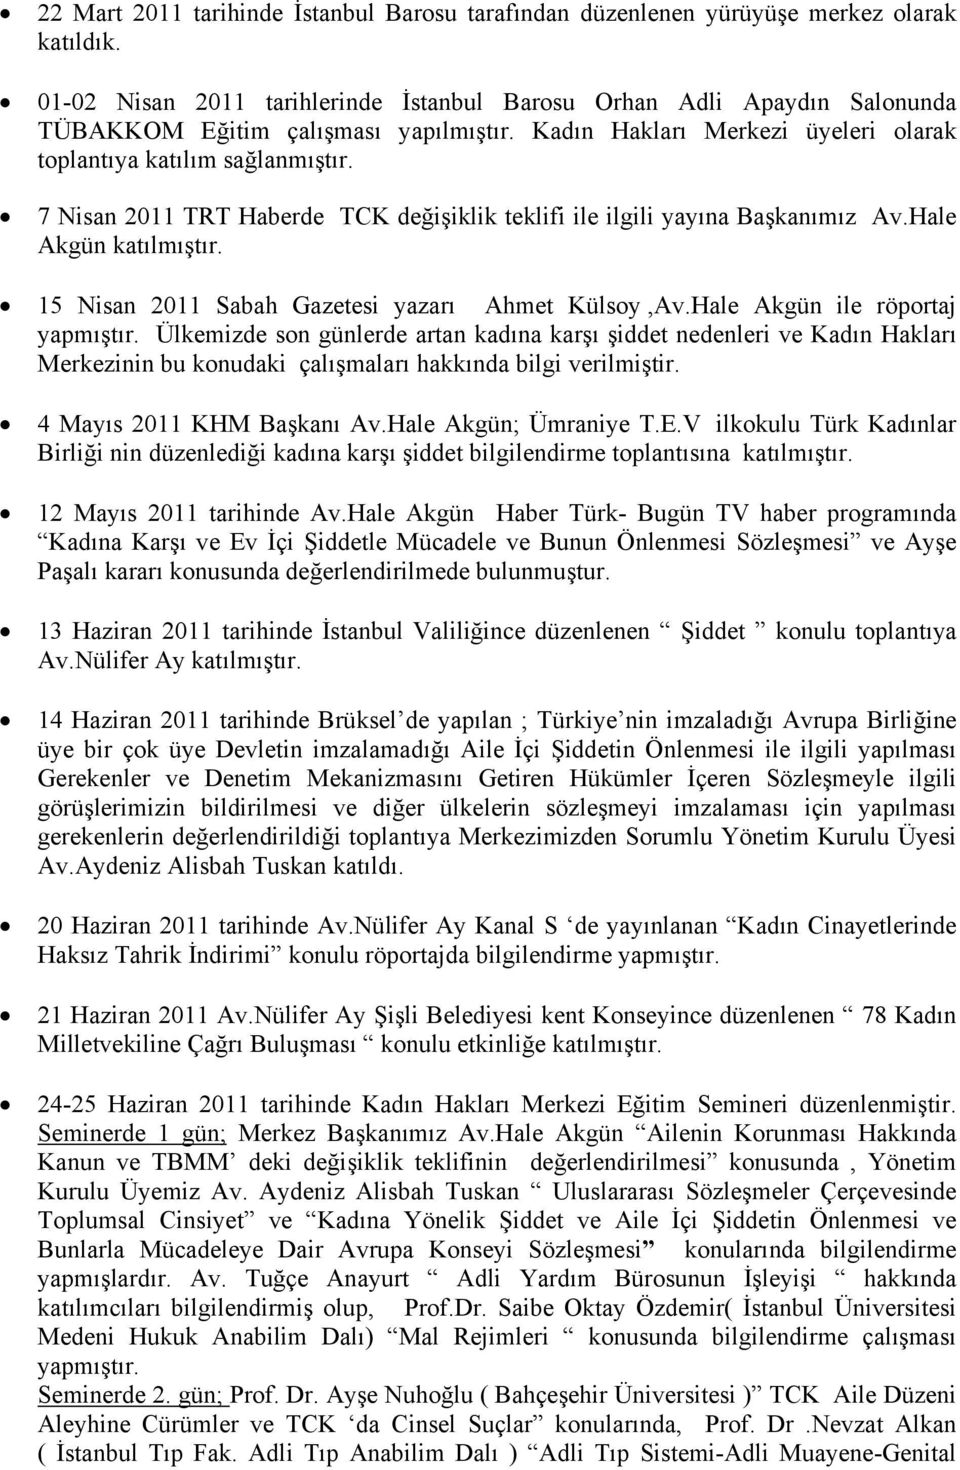 7 Nisan 2011 TRT Haberde TCK değişiklik teklifi ile ilgili yayına Başkanımız Av.Hale Akgün katılmıştır. 15 Nisan 2011 Sabah Gazetesi yazarı Ahmet Külsoy,Av.Hale Akgün ile röportaj yapmıştır.